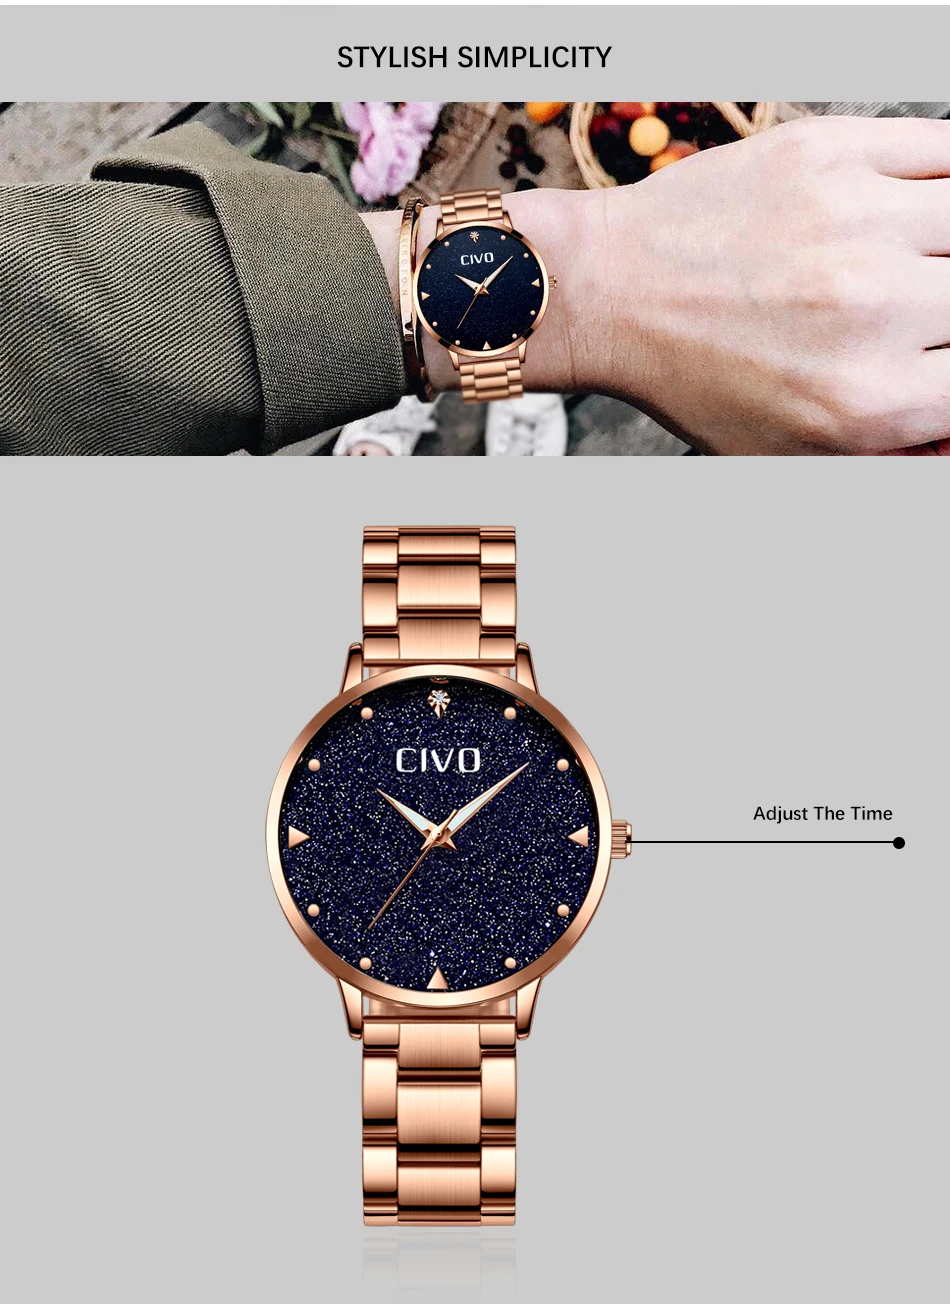 Чиво розовое золото часы Для женщин женские часы творческие часы Нержавеющая сталь Для женщин браслет часы Relogio Feminino Montre Femme